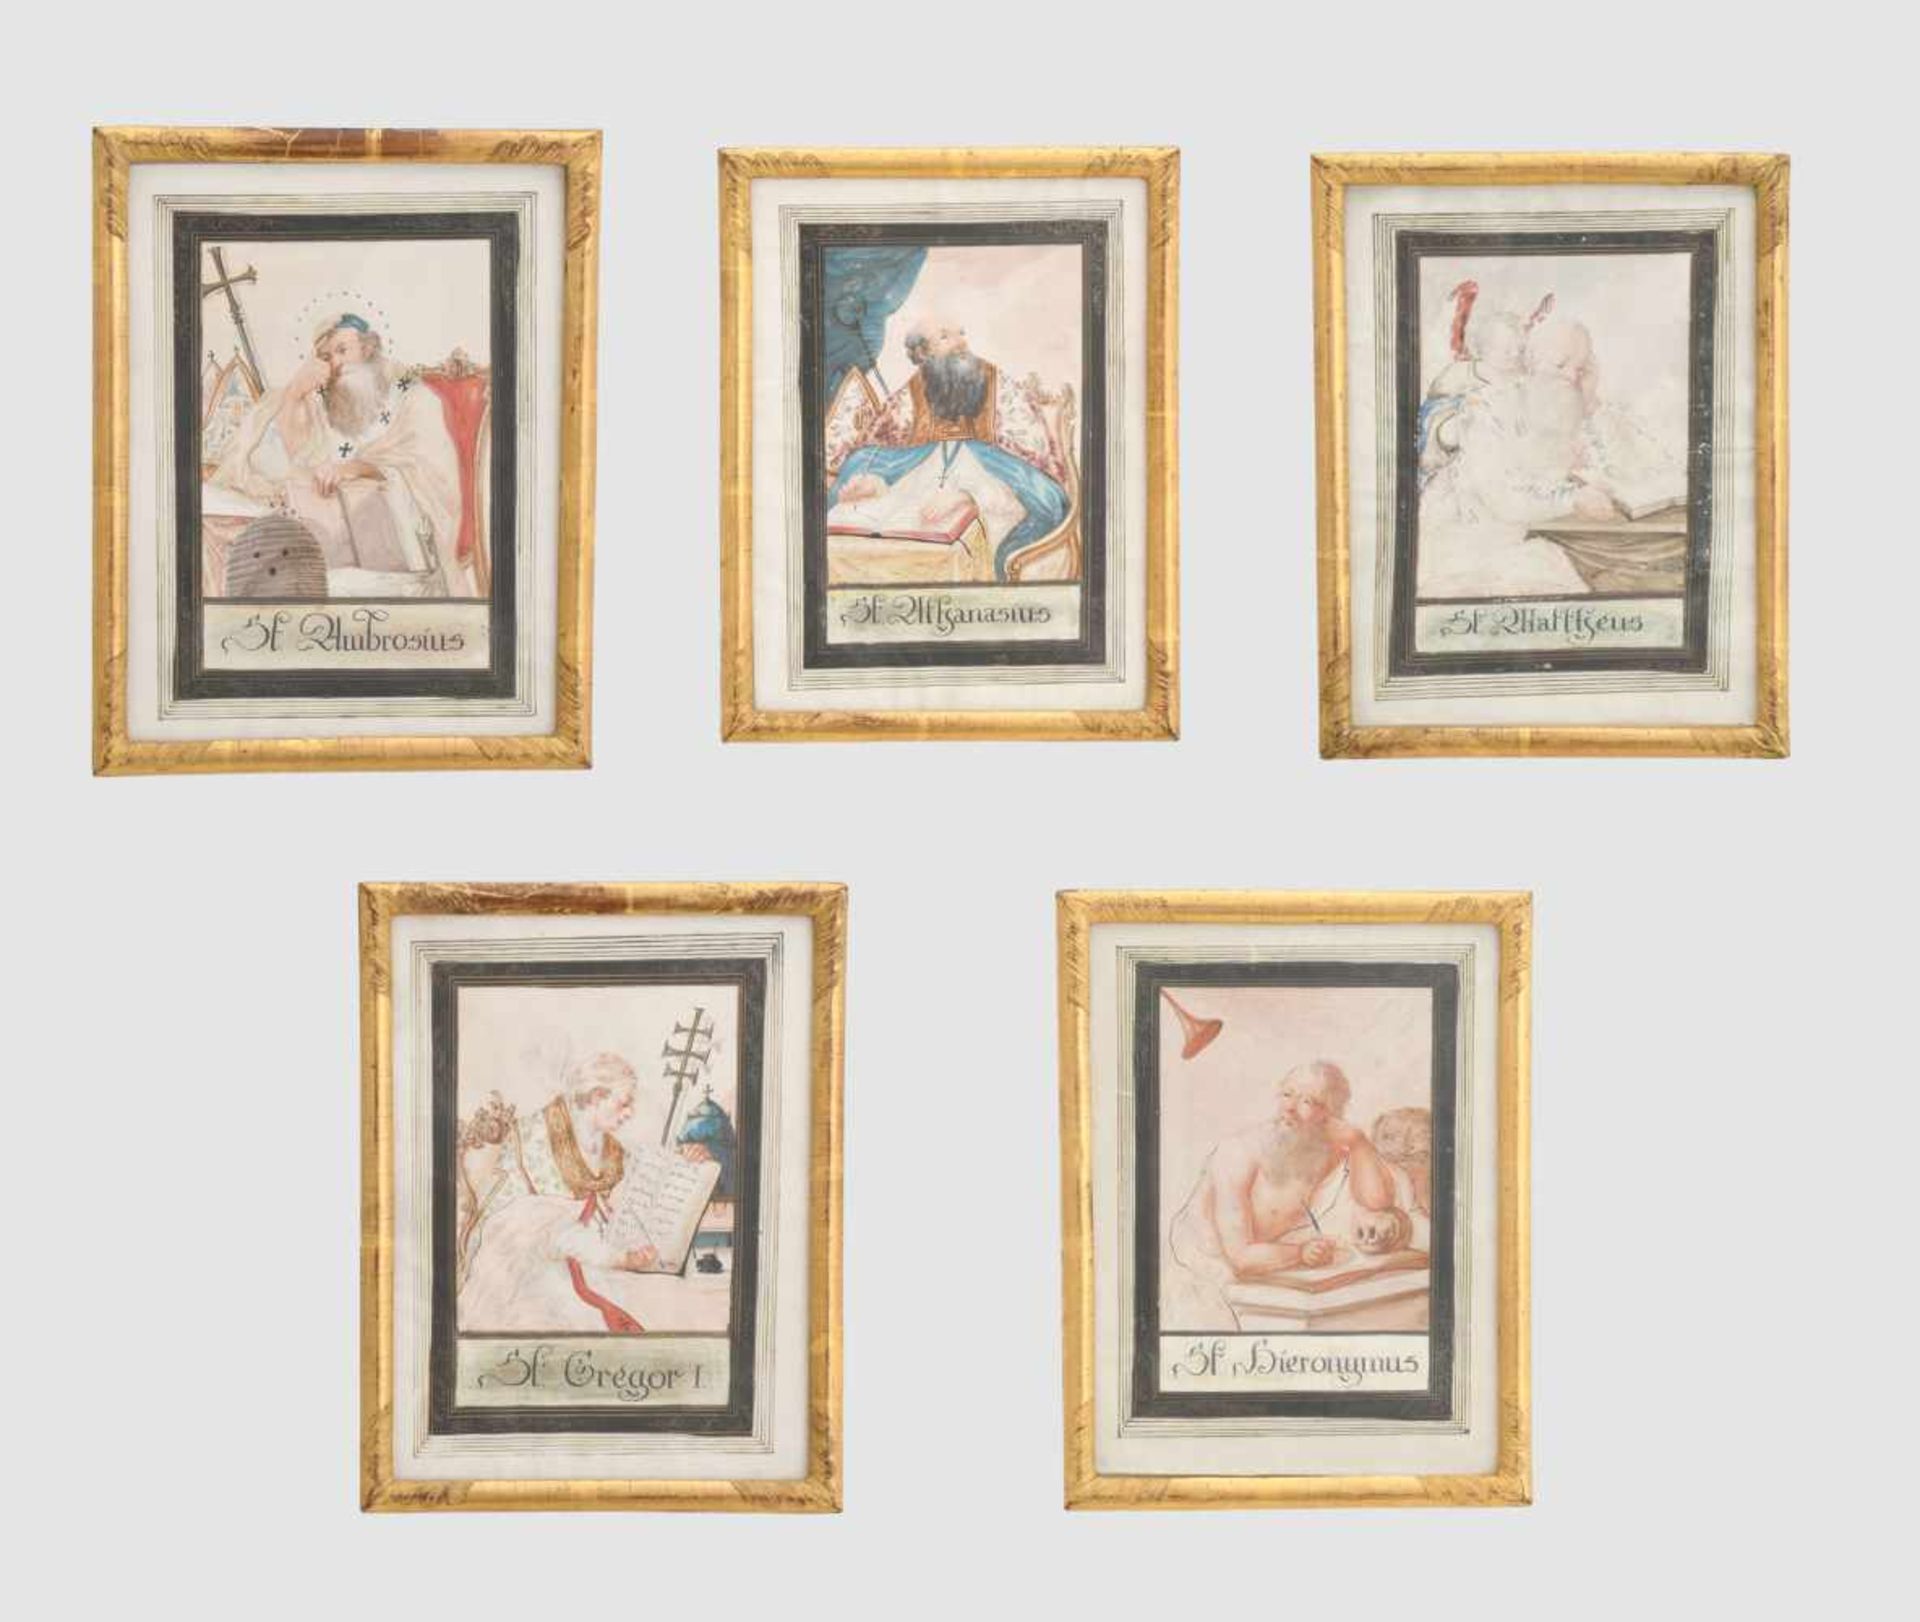 Serie von 4 kleinen AndachtsbildernSüddeutsch, Ende 18. Jh. Deckfarben auf Papier. Die vier